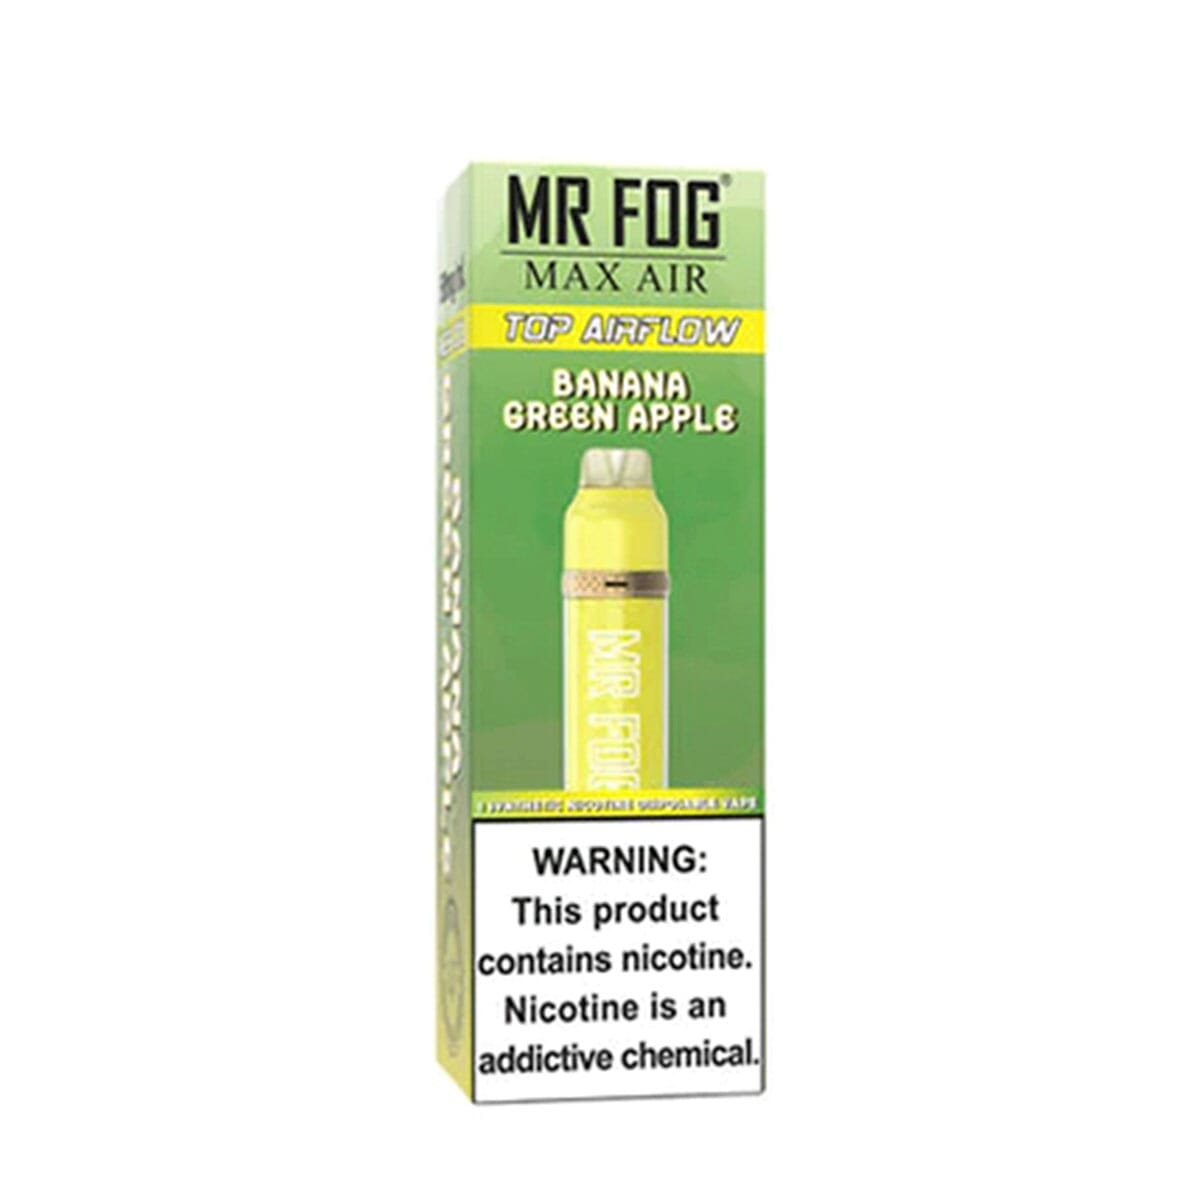 Mr. Fog Max Air Banana Green Apple Disposable Vape Pen Disposable Mr. Fog Max Air 